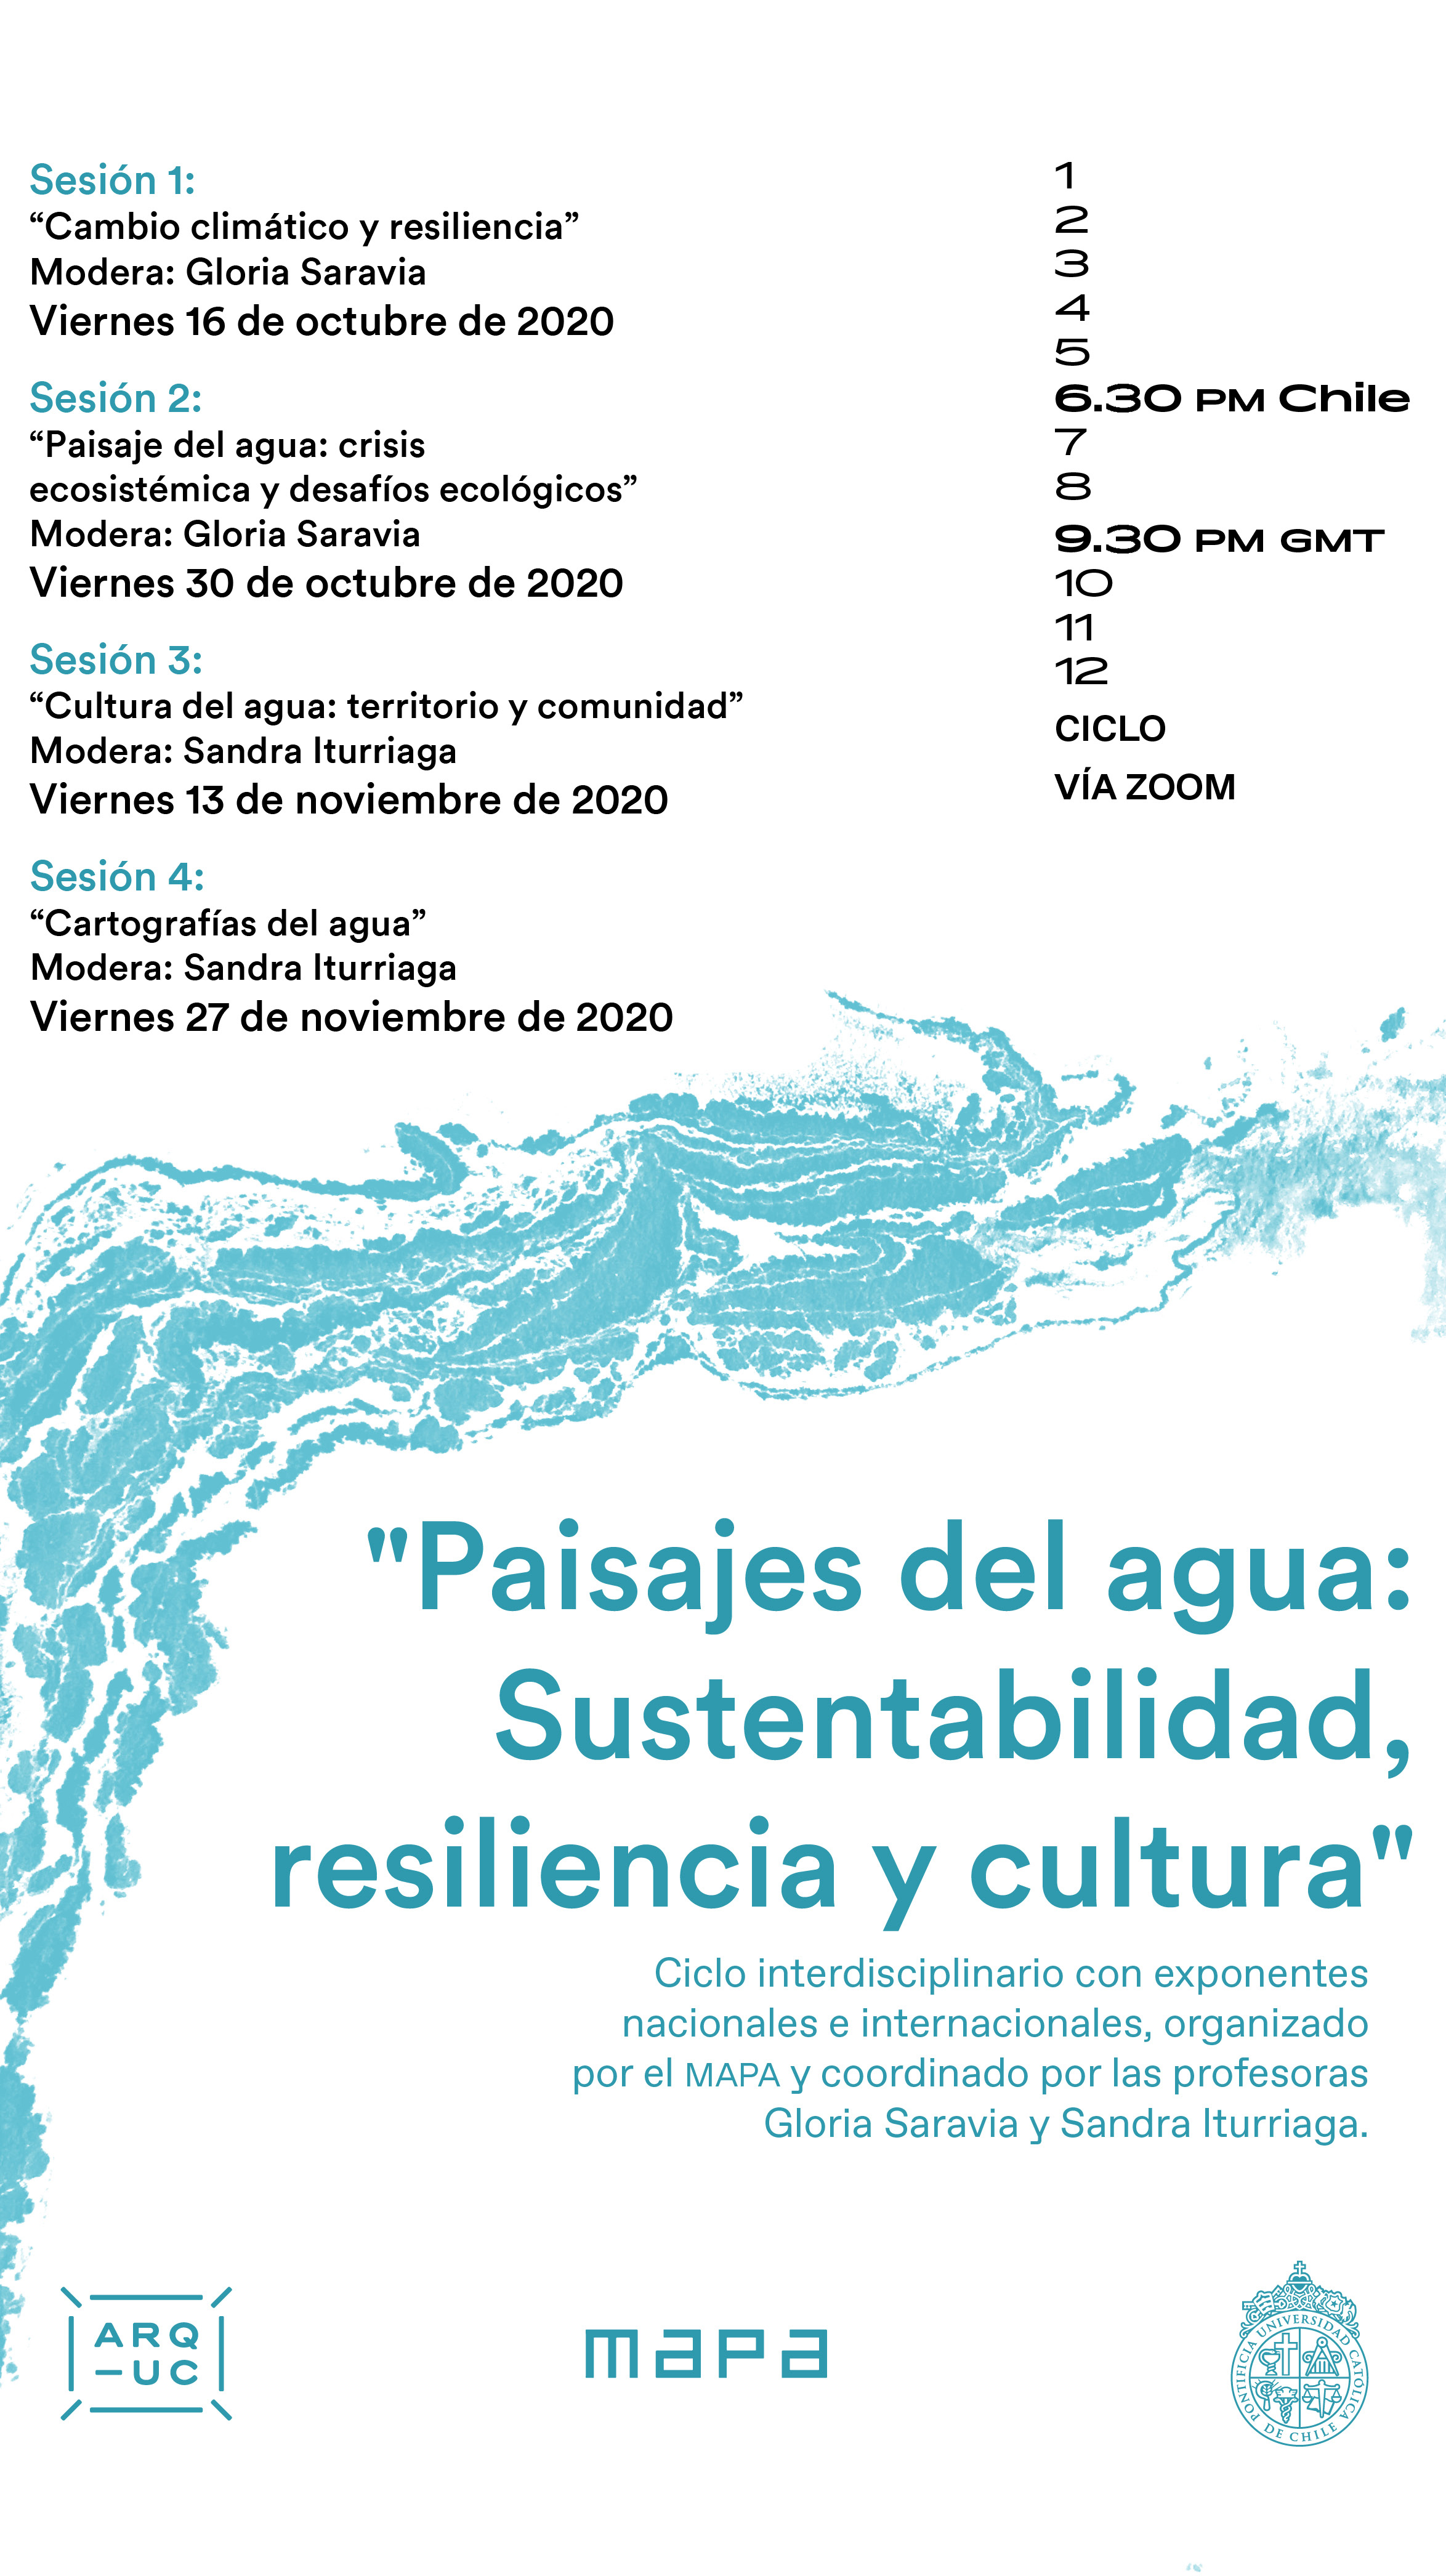 202010091_AFICHE_Paisajes_del_agua__Sustentabilidad_resiliencia_y_cultura_1.jpg